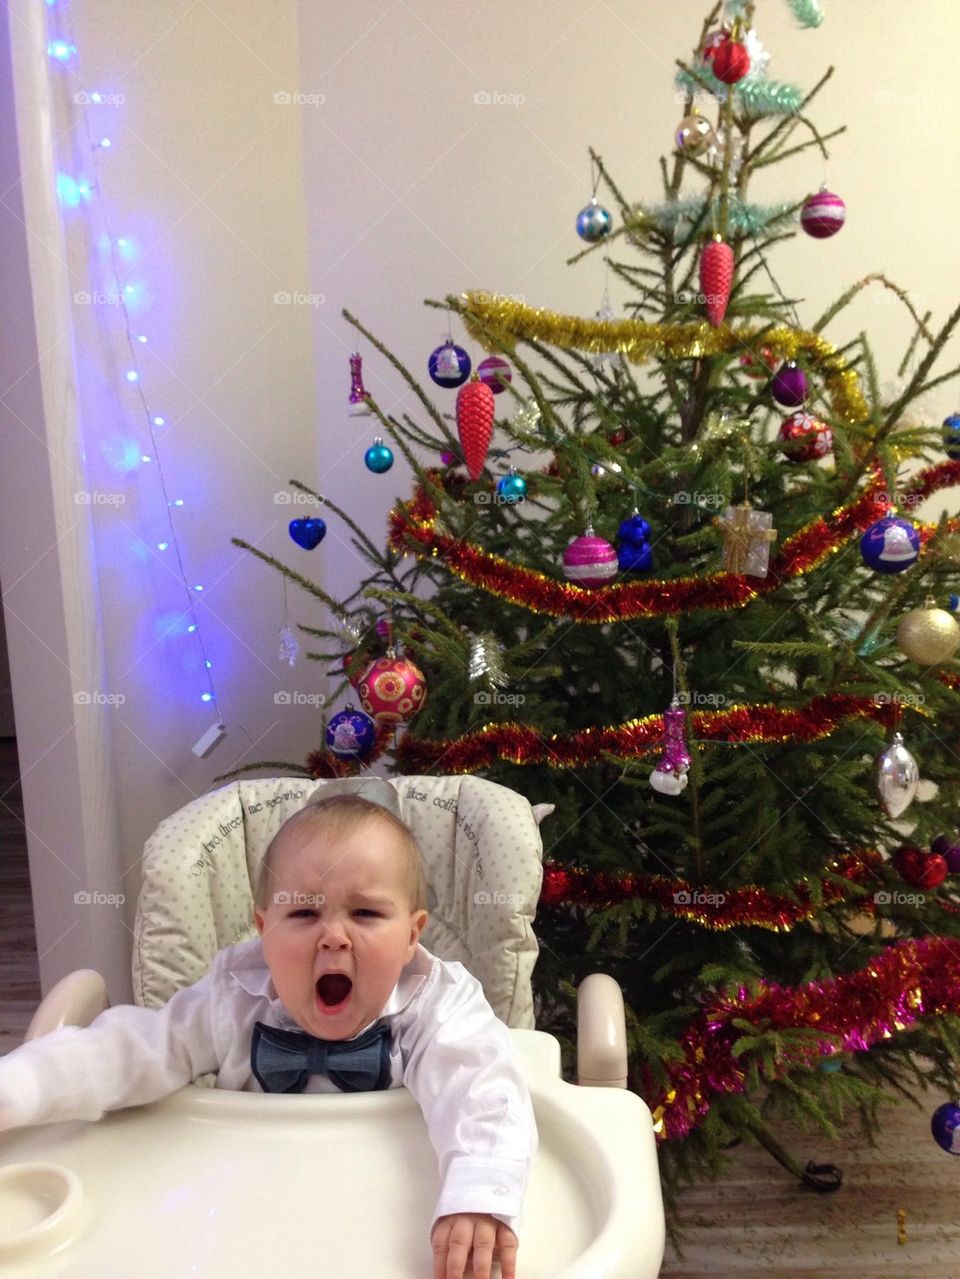 Christmas tree and baby